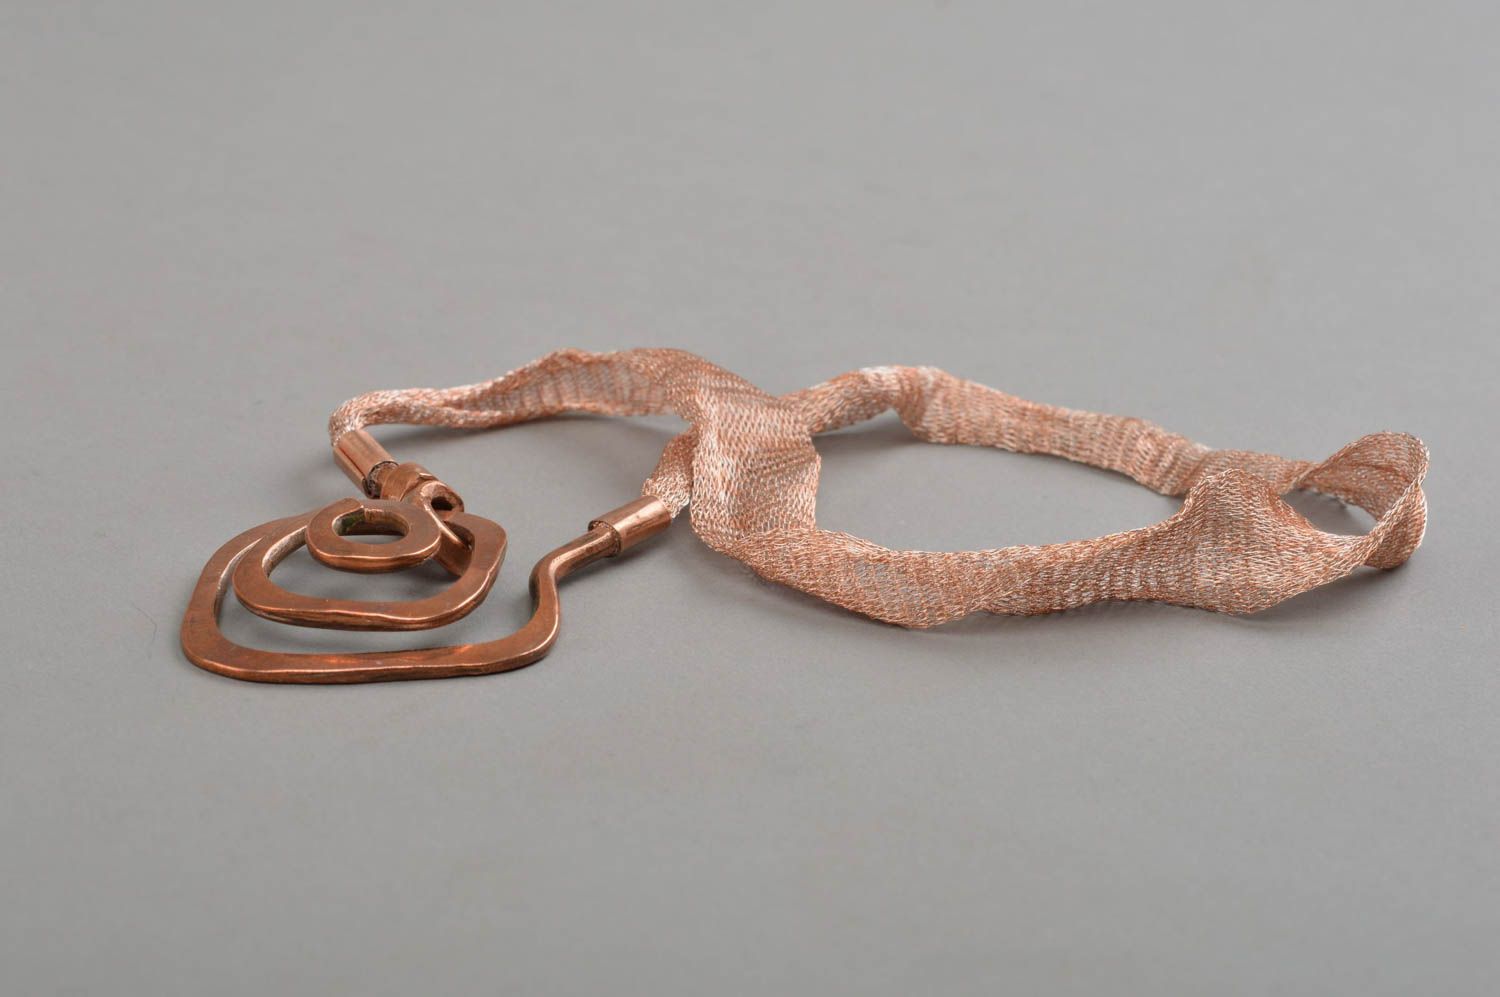 Авторский кованый кулон на шнурке из меди оригинальный аксессуар ручной работы фото 4